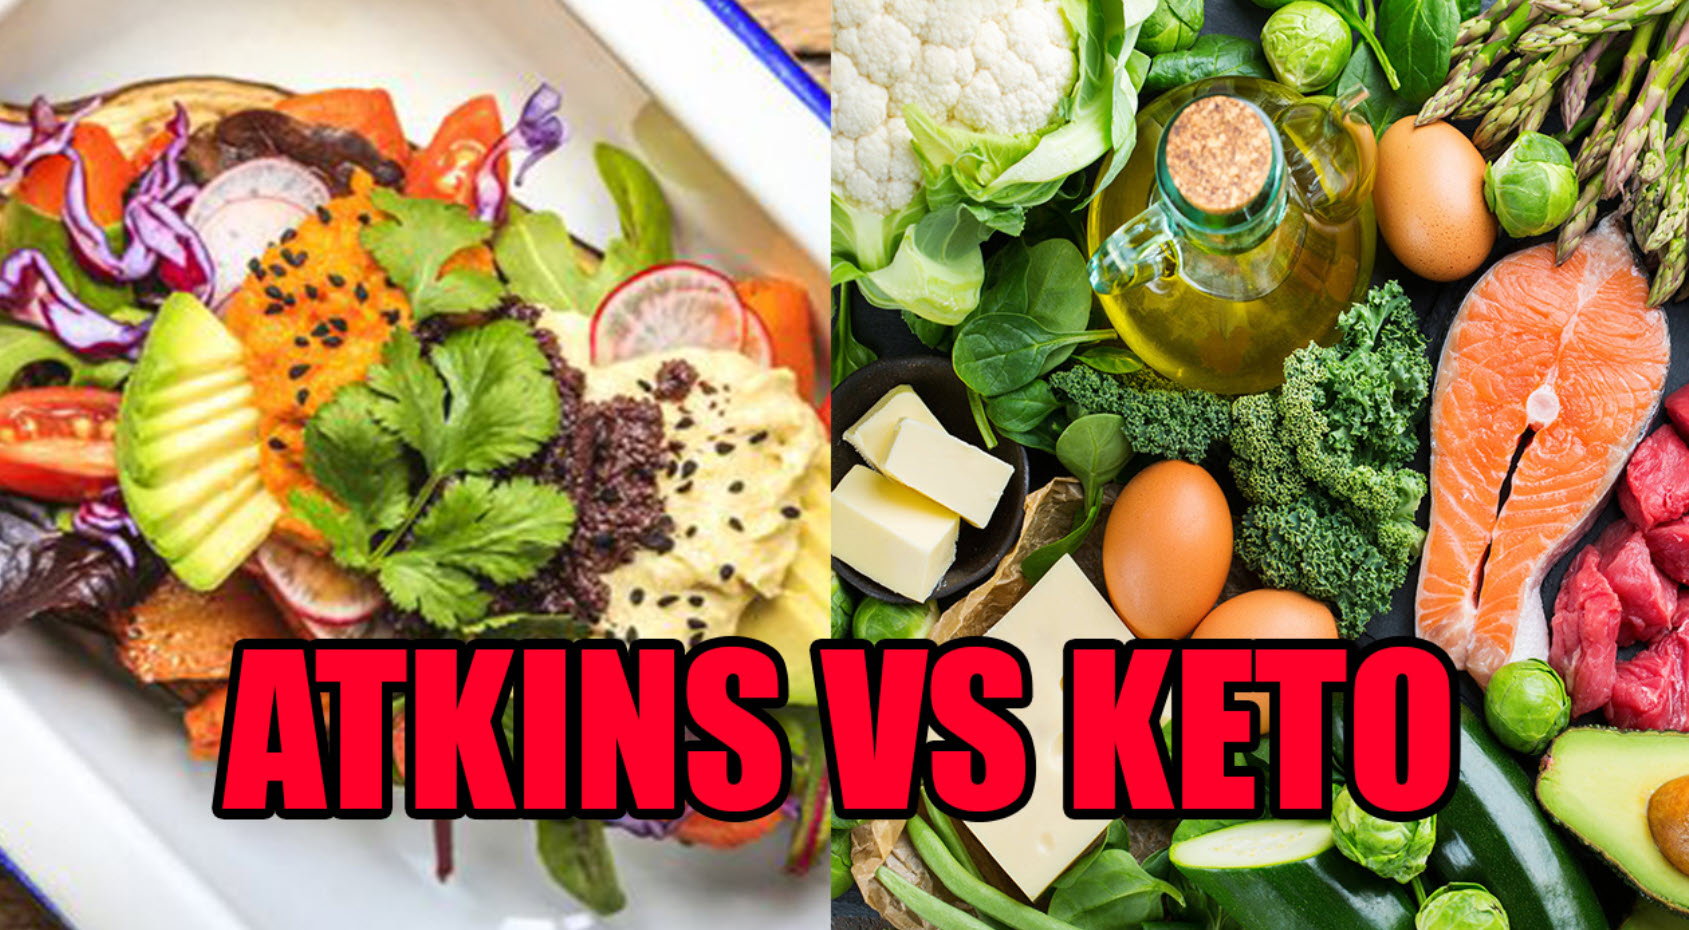 Keto diet versus Atkins